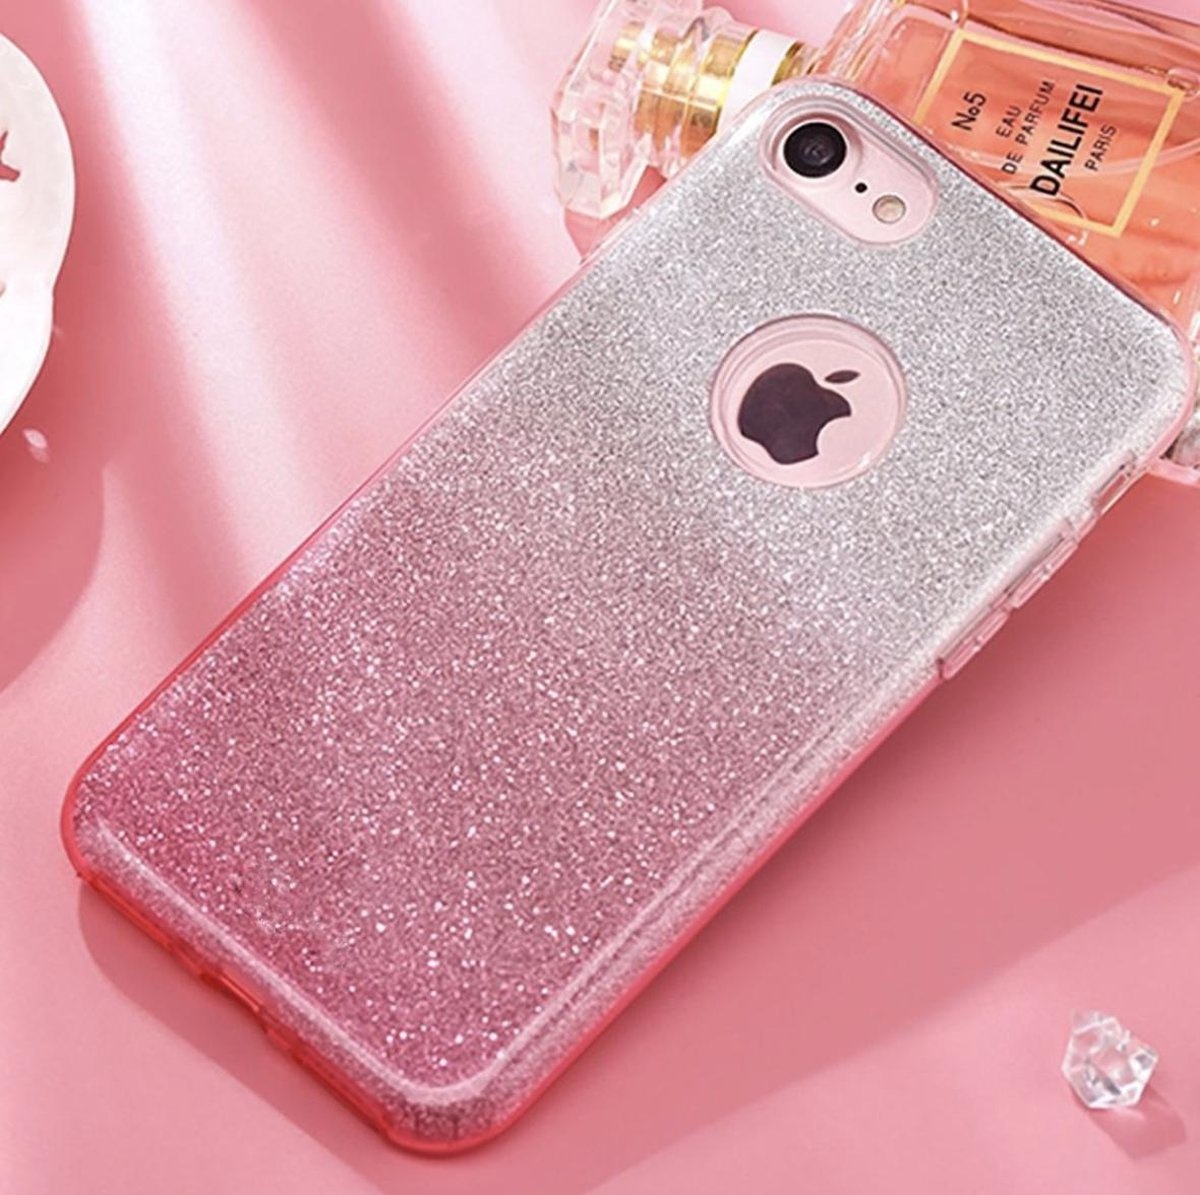 fotografie Worstelen Stier Luxueuze Glitter Hoesje - iPhone 6 6S - Roze - Bling Bling cover - TPU case  - YPCd